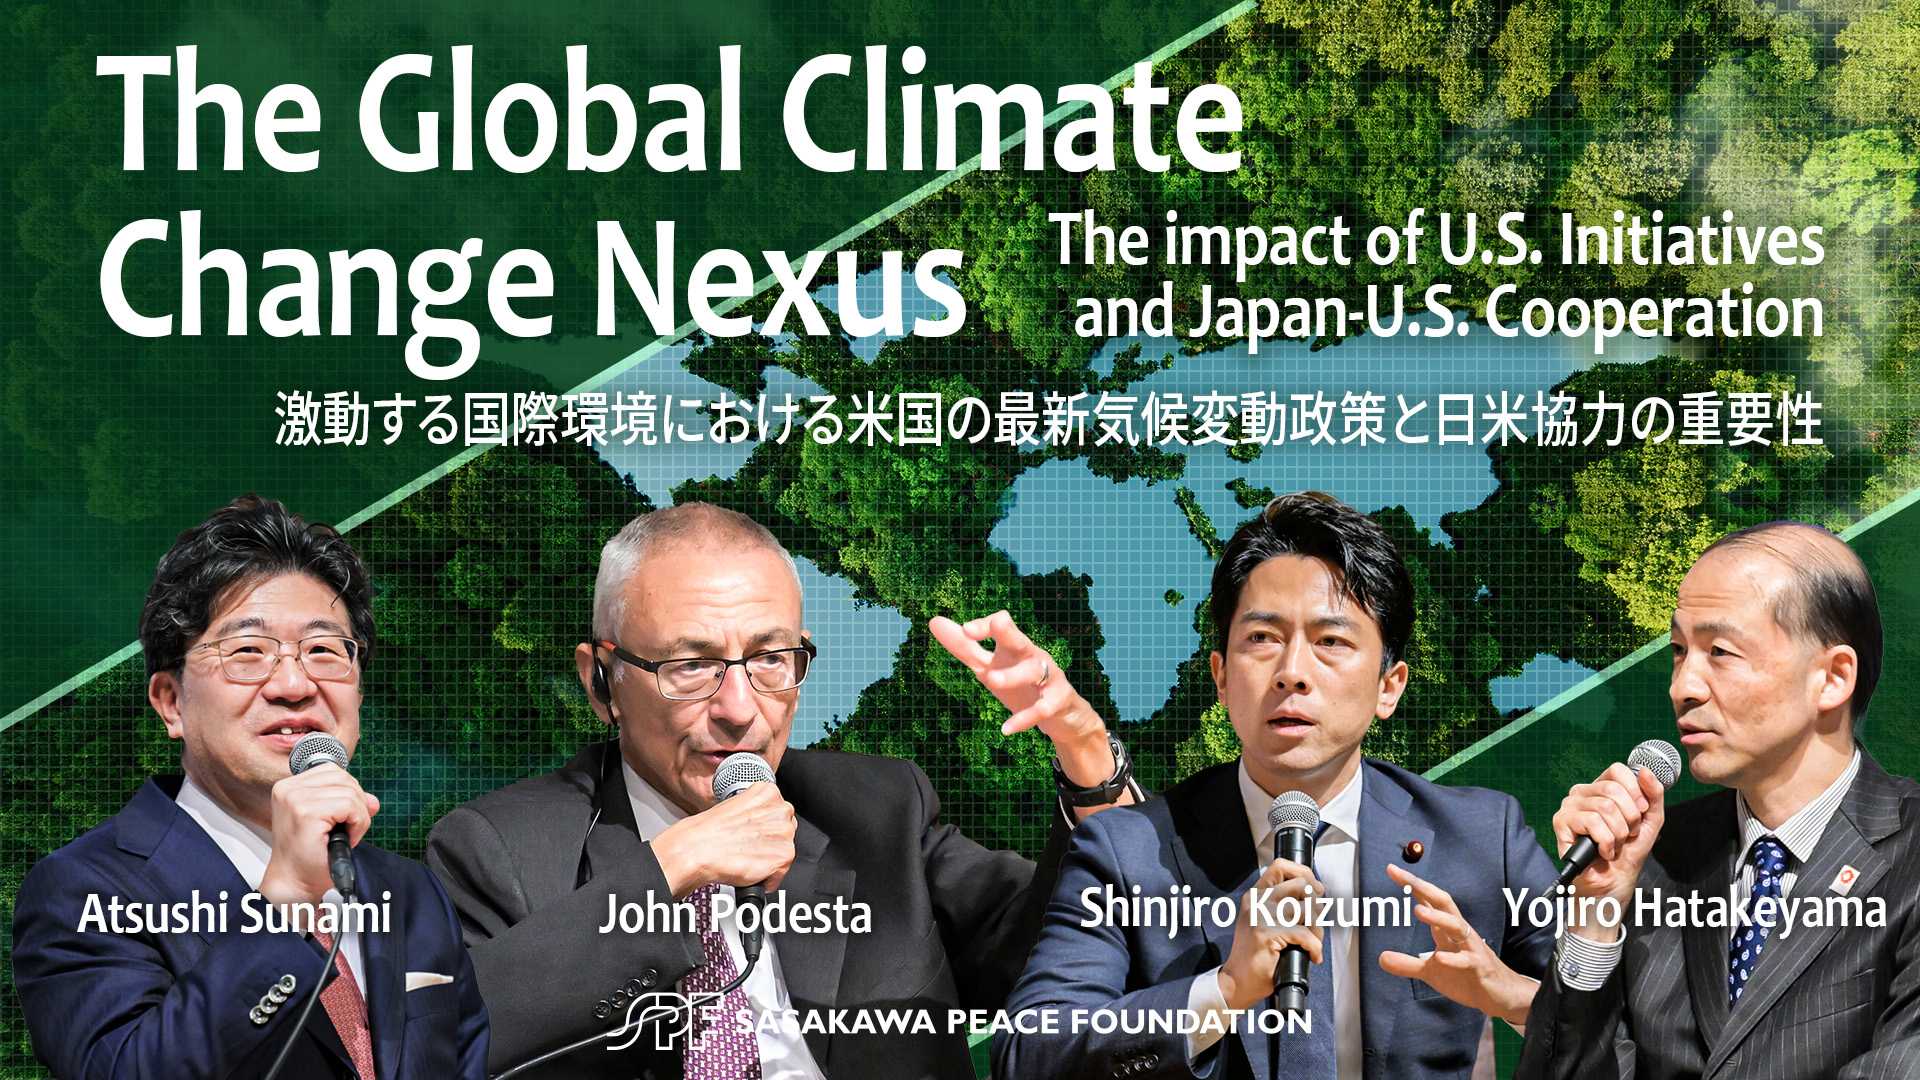 【講演会報告】The Global Climate Change Nexus： 激動する国際環境における米国の最新気候変動政策と日米協力の重要性